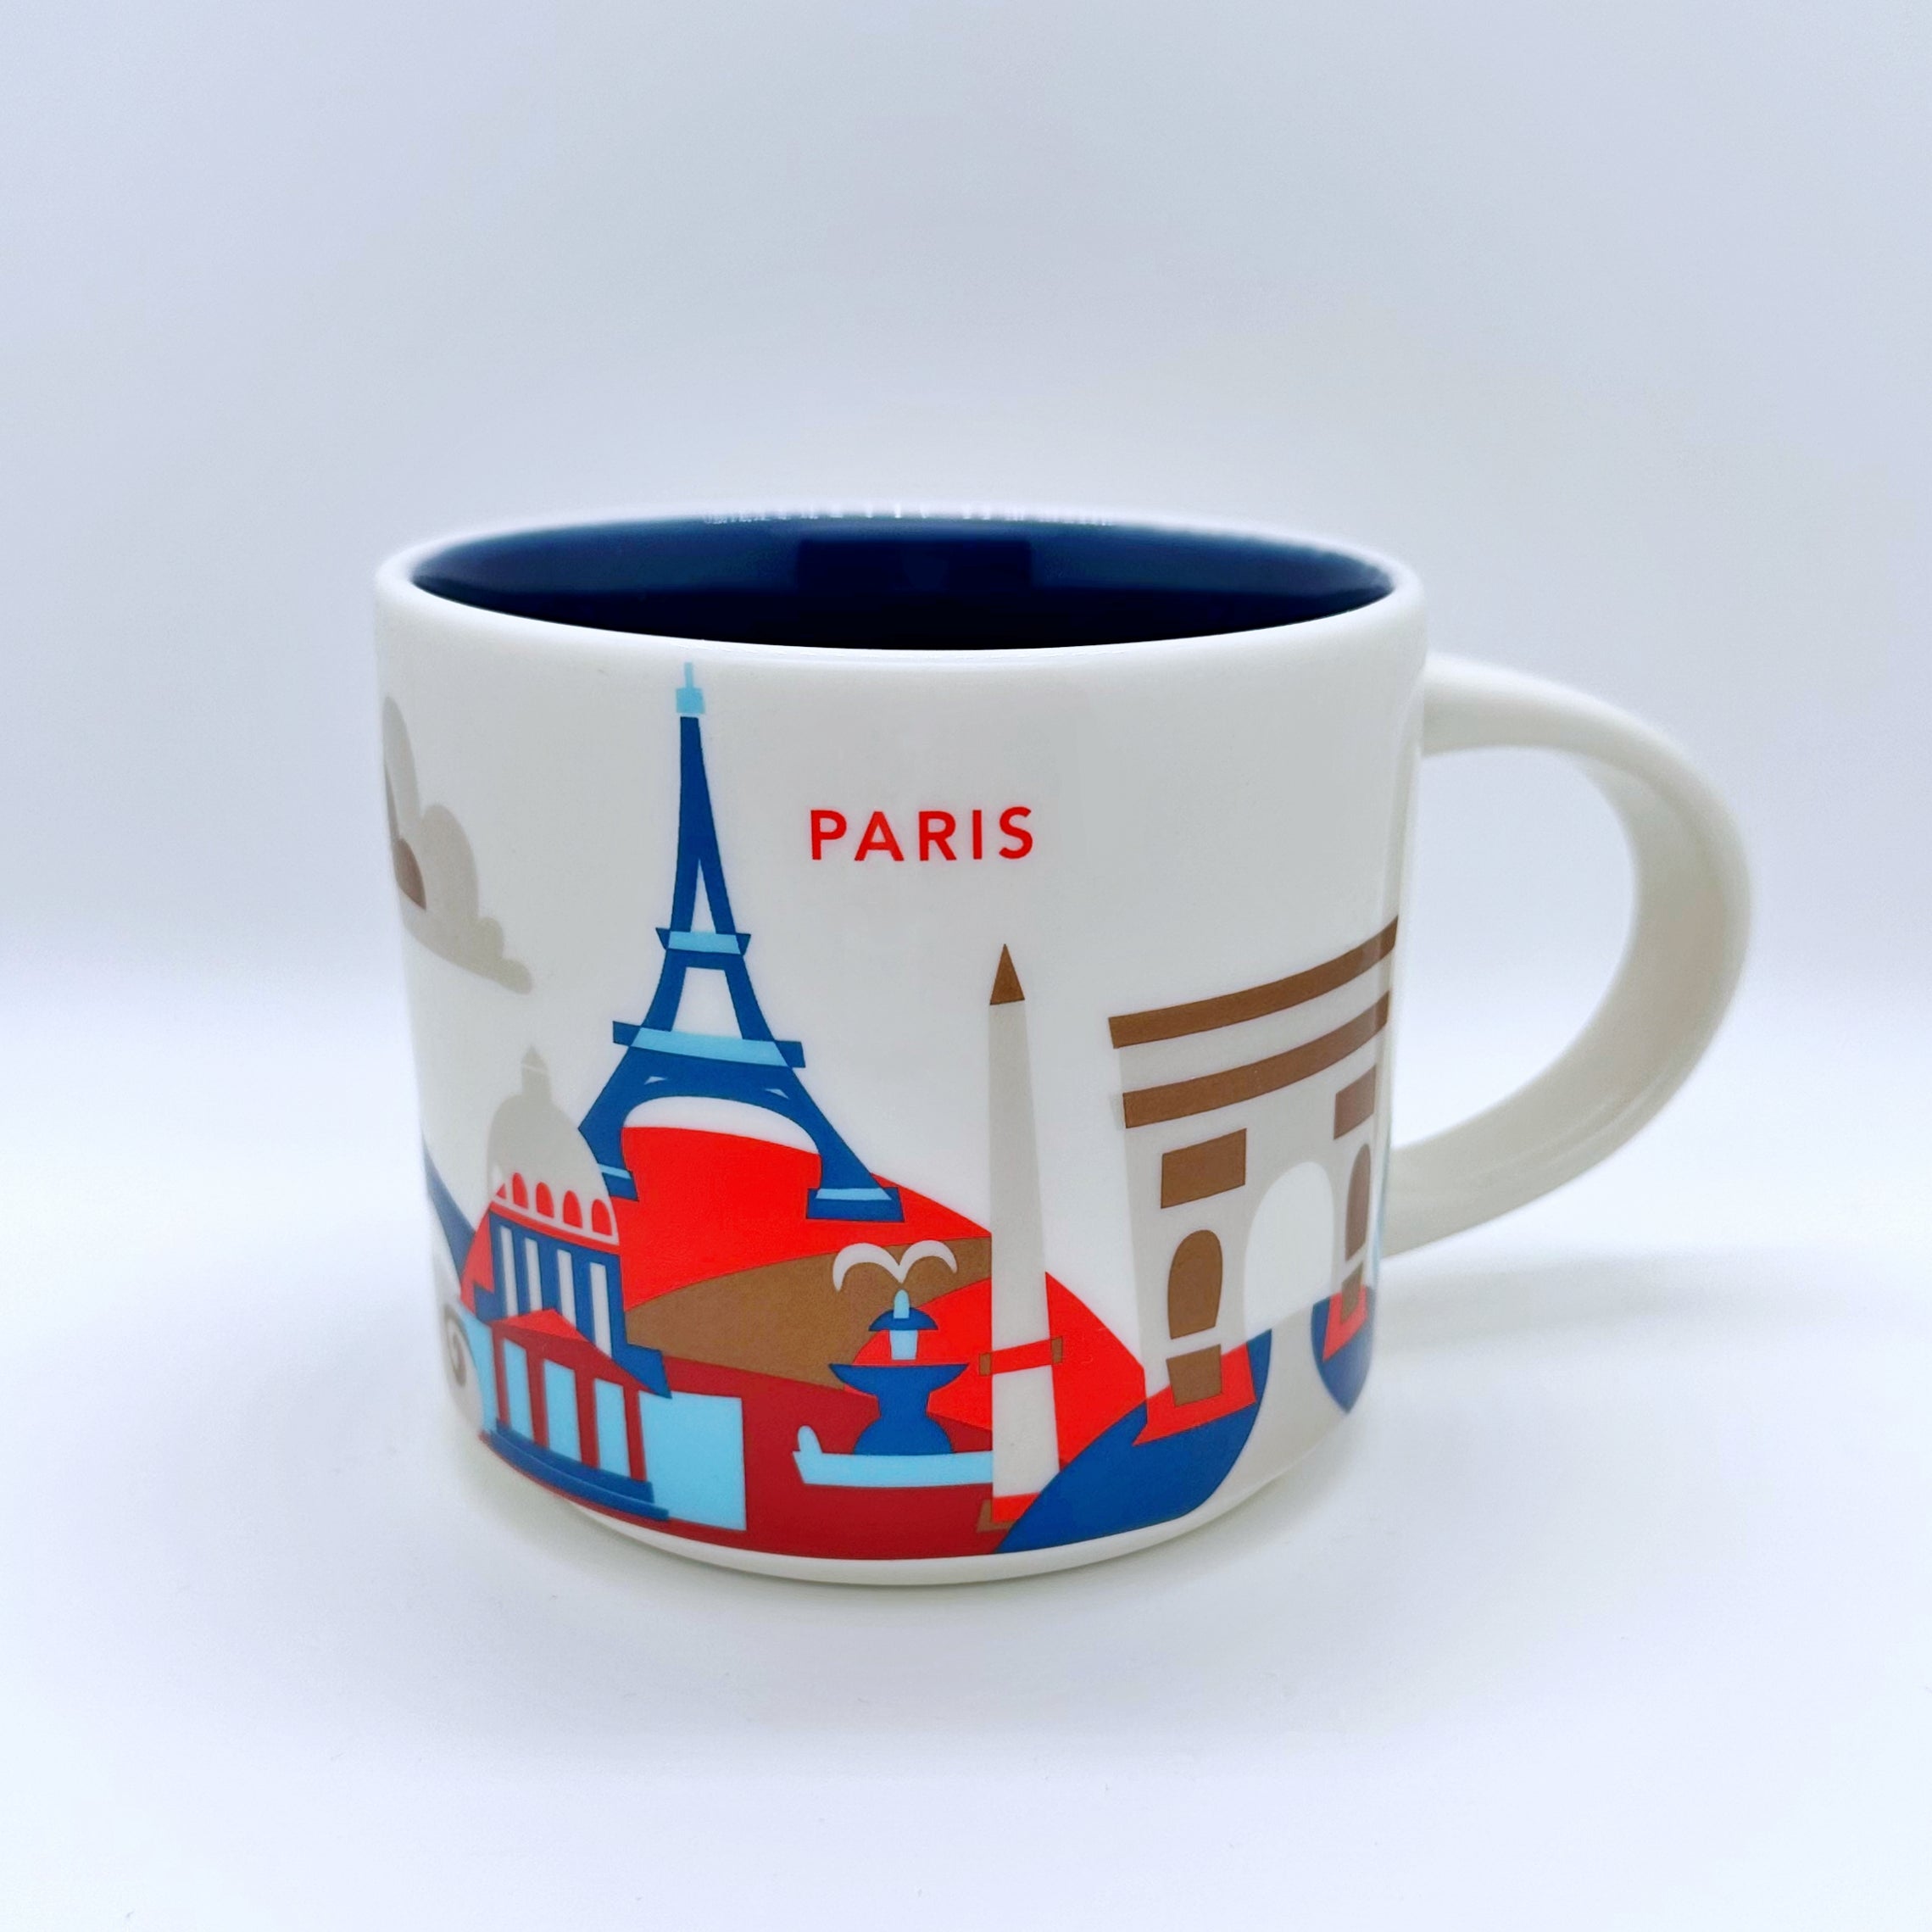 Kaffee Cappuccino oder Tee Tasse von Starbucks mit gemalten Bildern aus der Stadt Paris